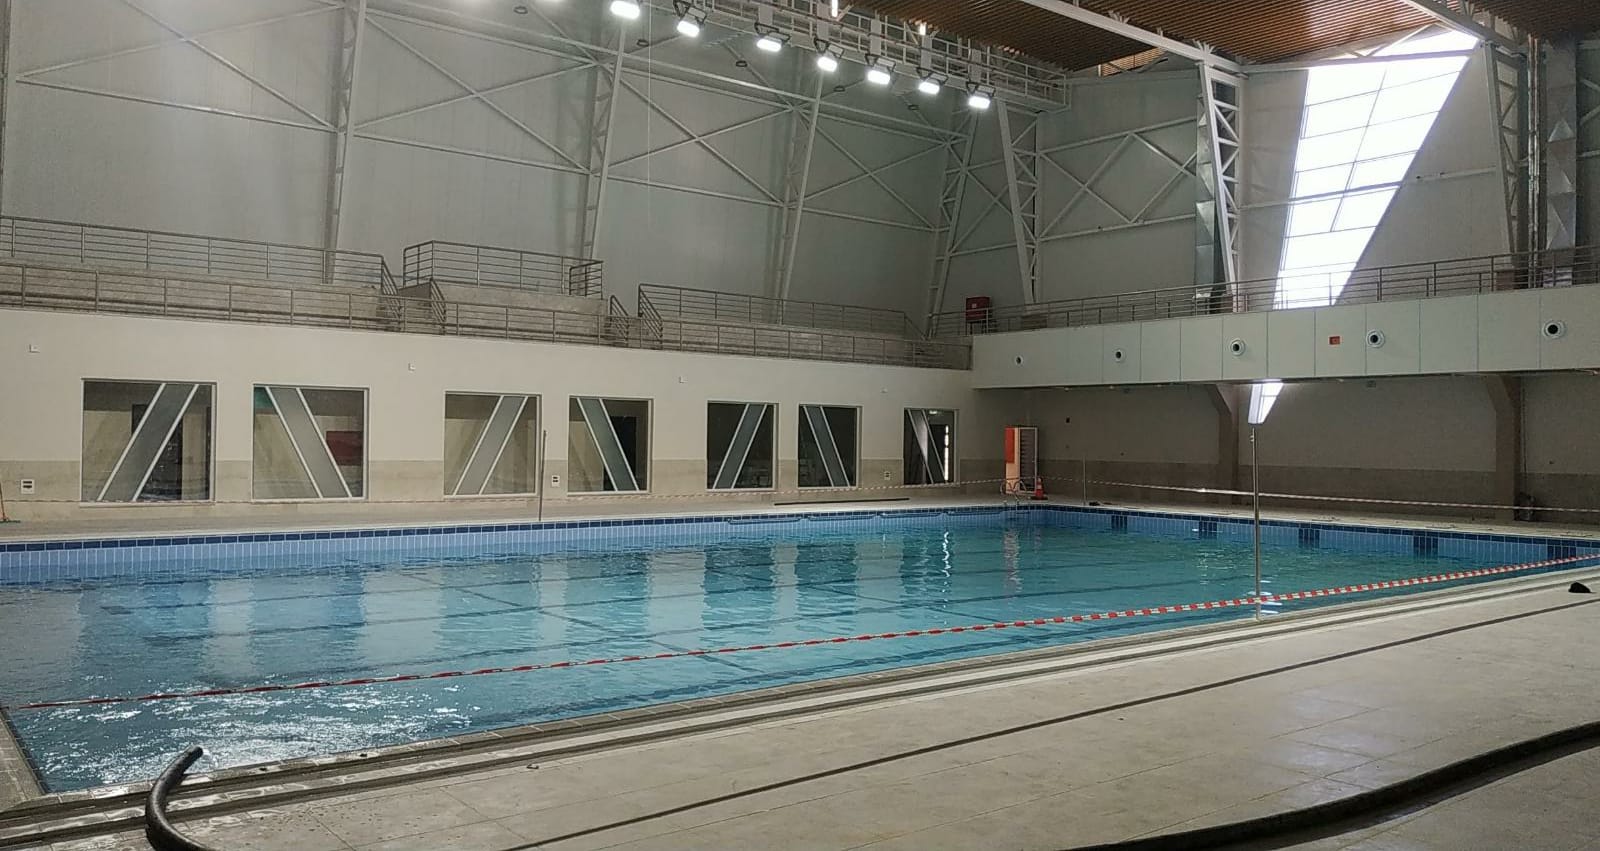 الجامعة تقترب من انتهاء العمل بمشروع المسبح النصف الاولمبي المغلق الاول من نوعه فلسطين